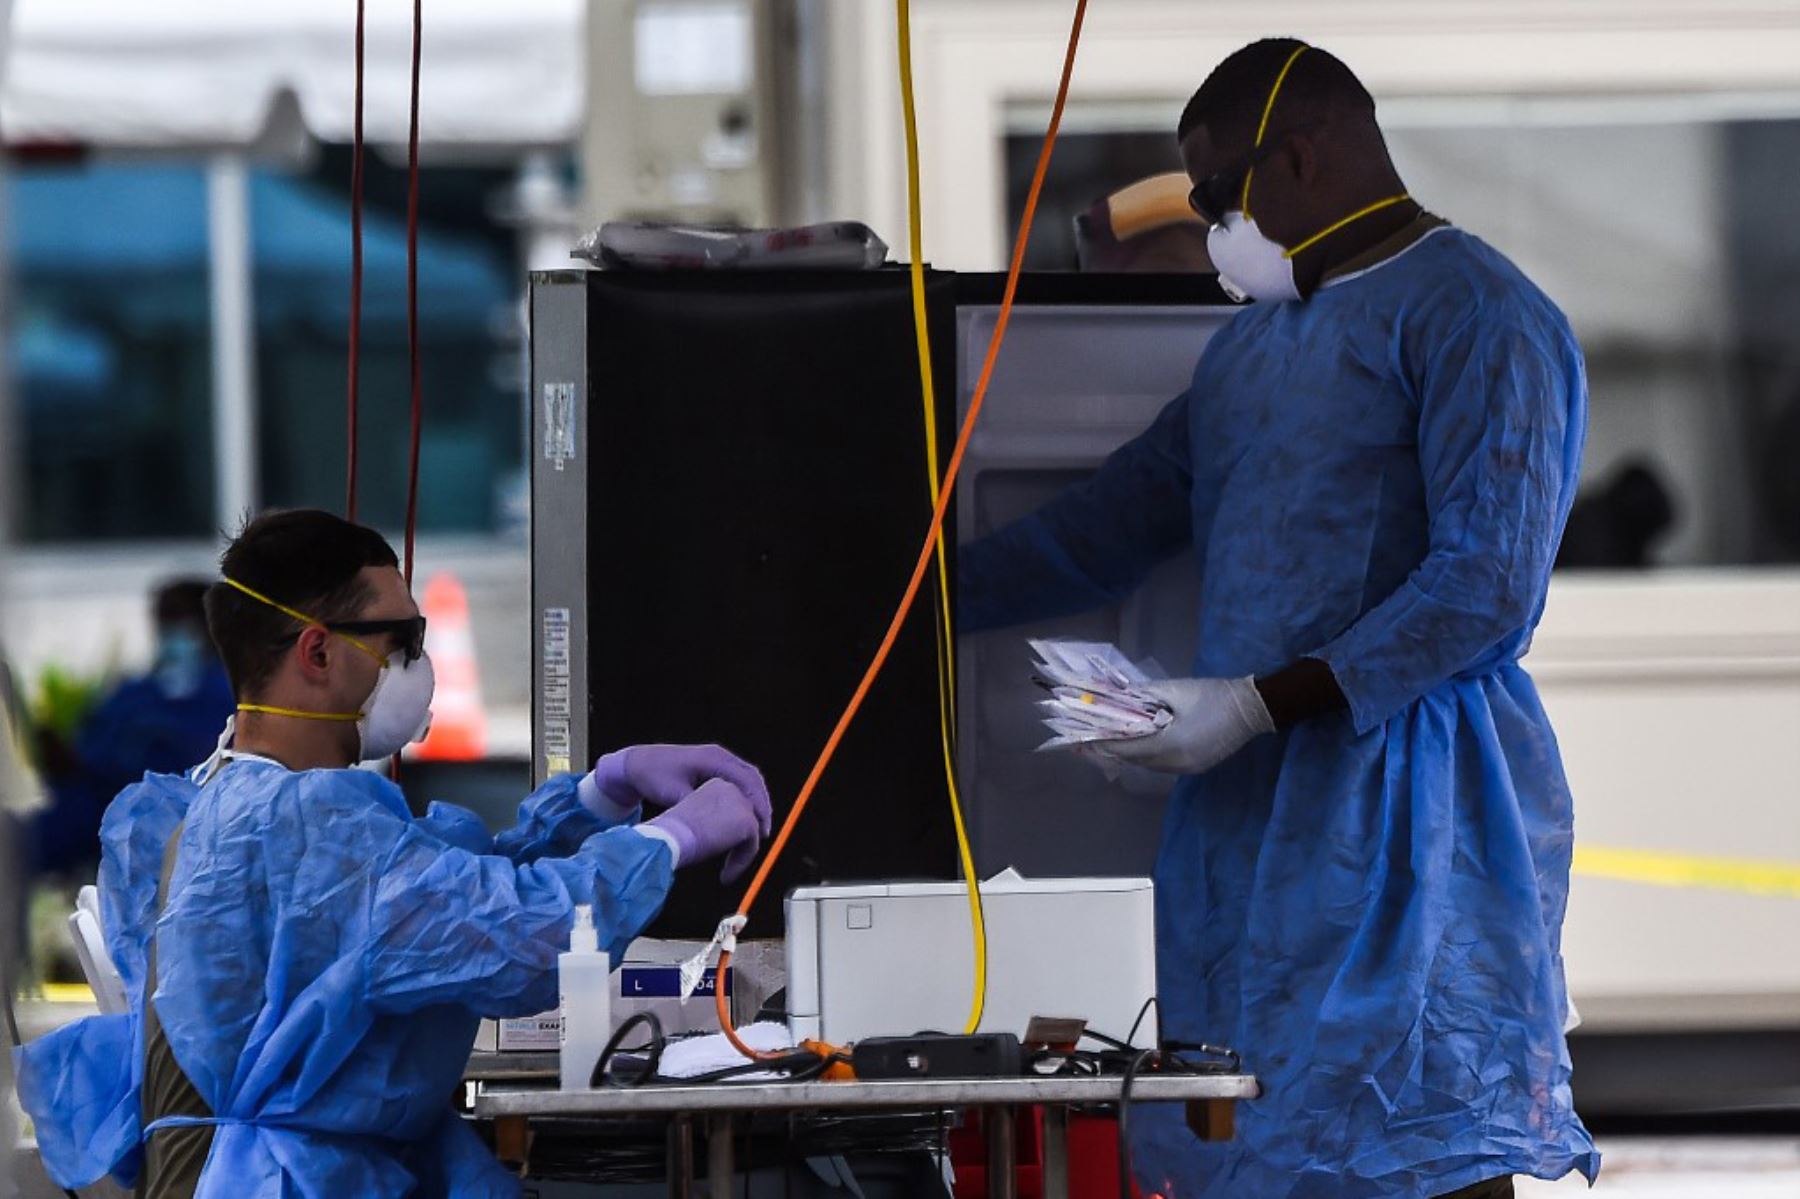 Un miembro de la Guardia Nacional habla con una persona en un automóvil que espera una prueba covid-19 en un sitio de prueba de coronavirus en Miami Beach, Florida.
Foto:AFP